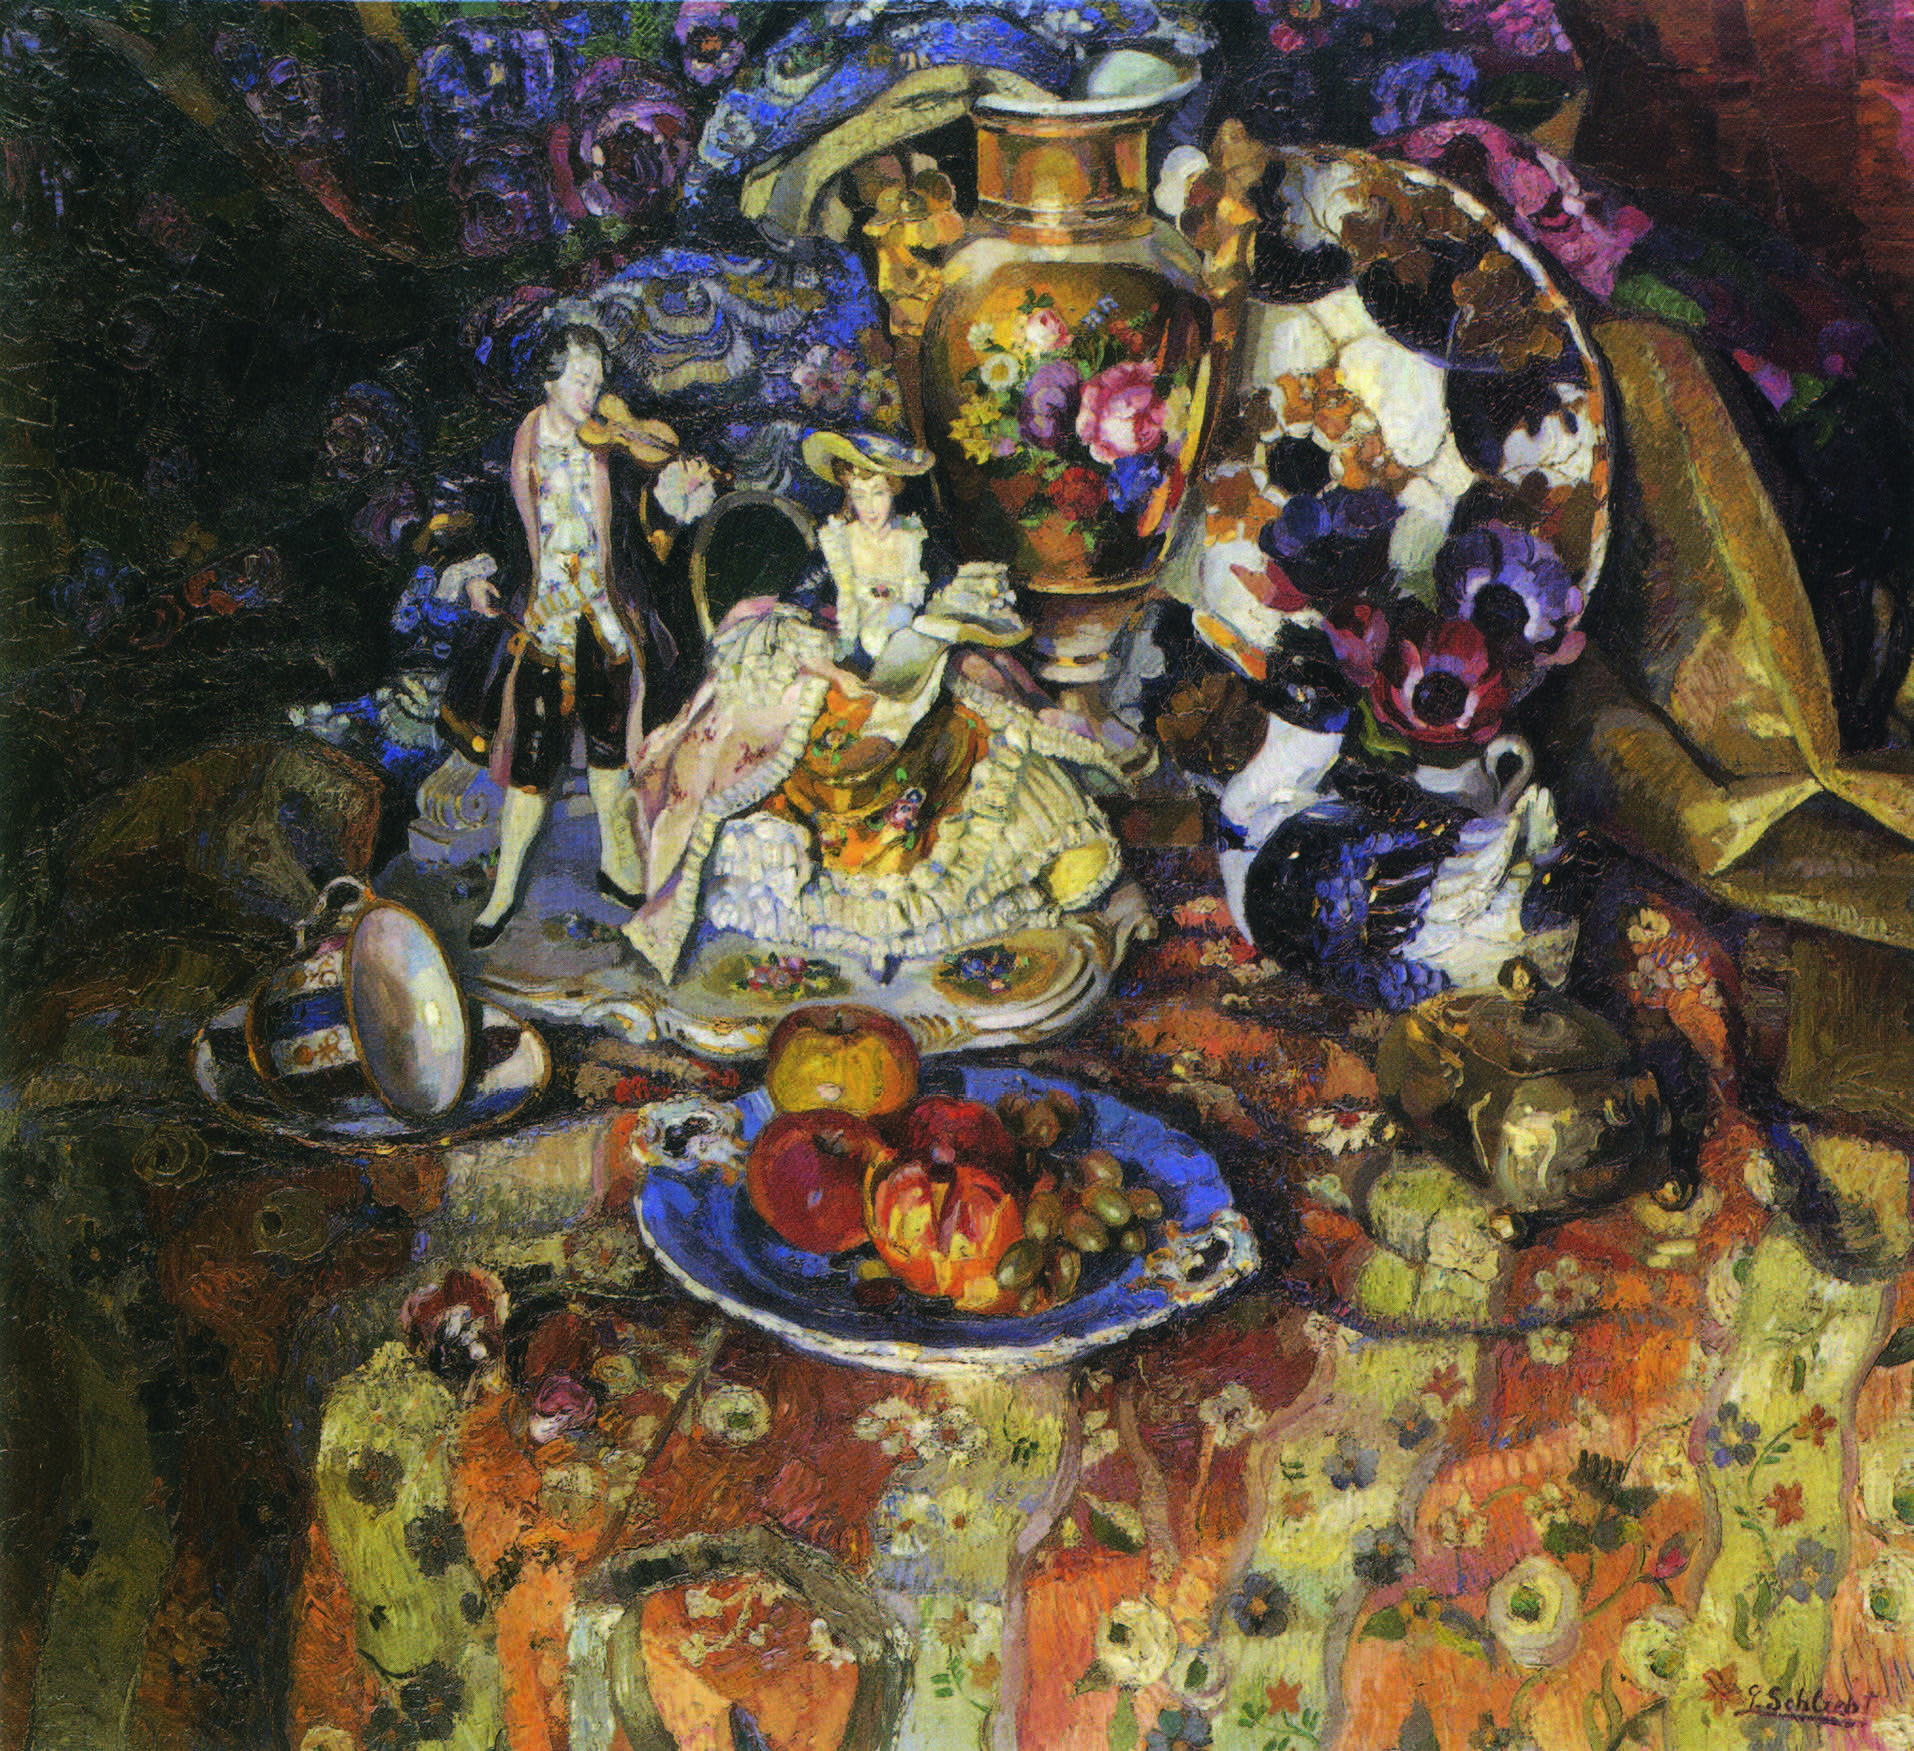 Georg Schlicht: Stillleben mit Porzellan und Früchten. Ca. 1924, Öl auf Leinwand, 83 x 90 cm, Privatbesitz